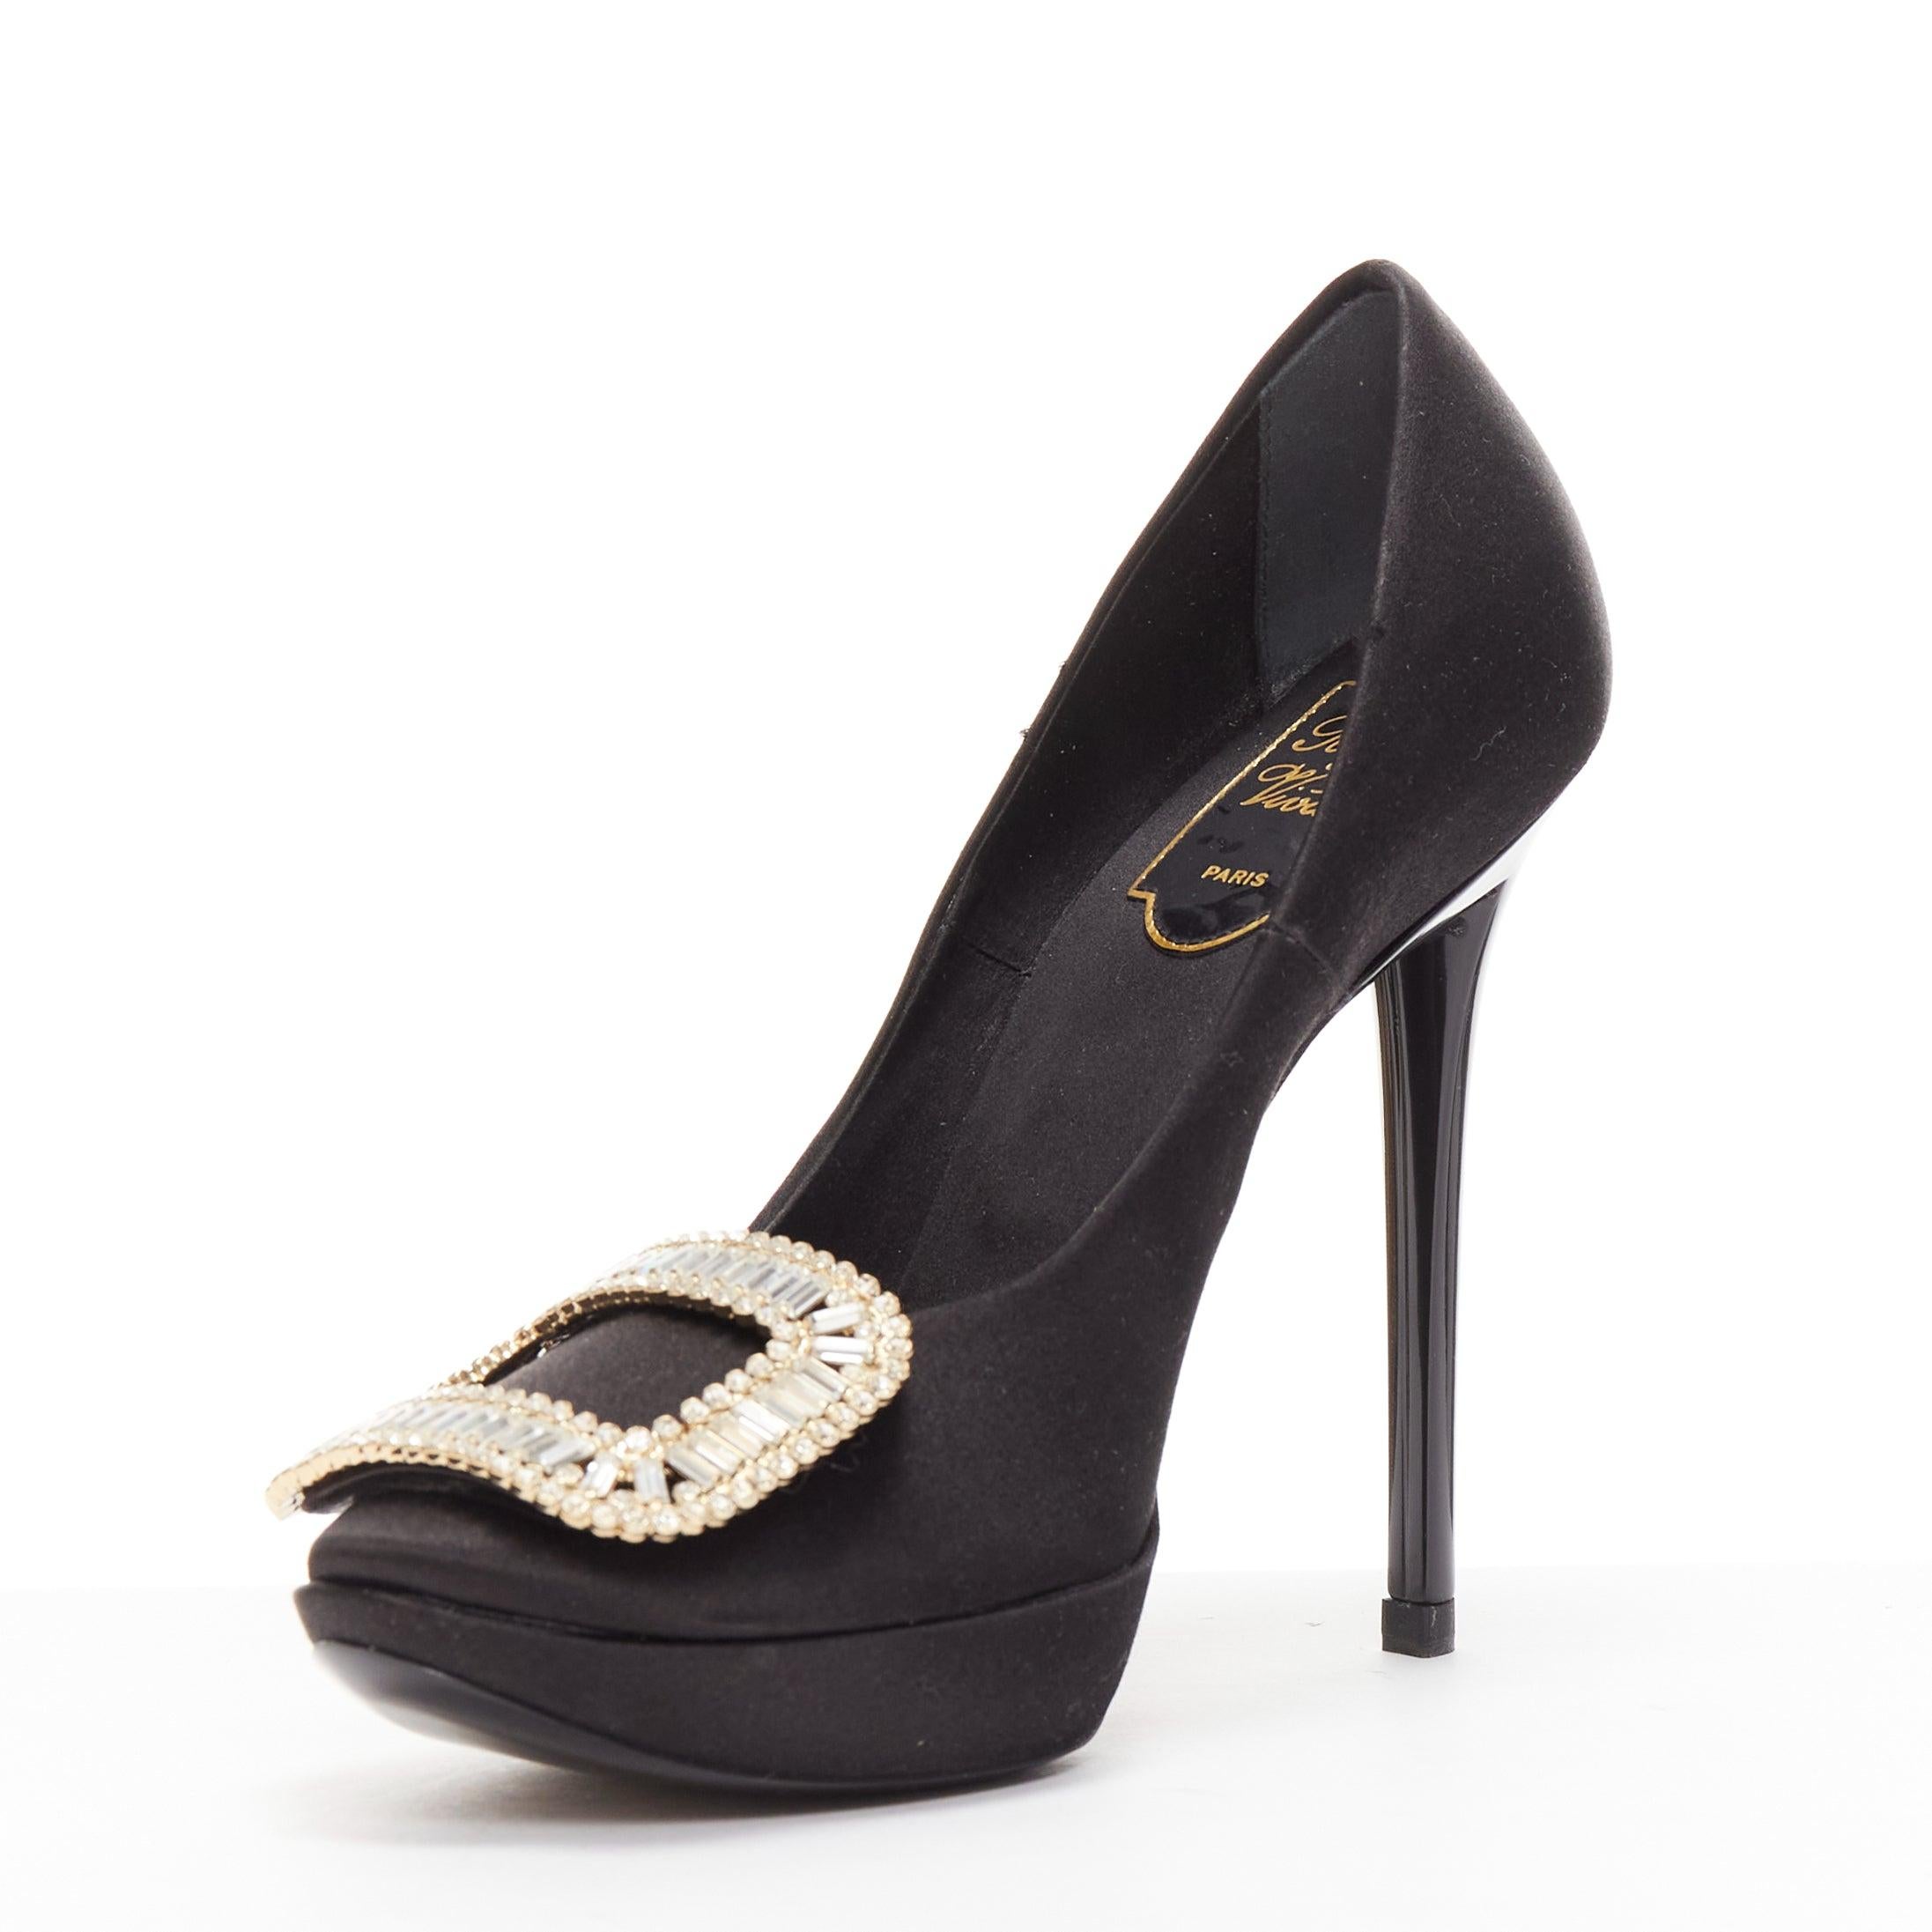 ROGER VIVIER Chaussures compensées Limelight noires satin argentées avec boucle en cristal EU35,5 Pour femmes en vente